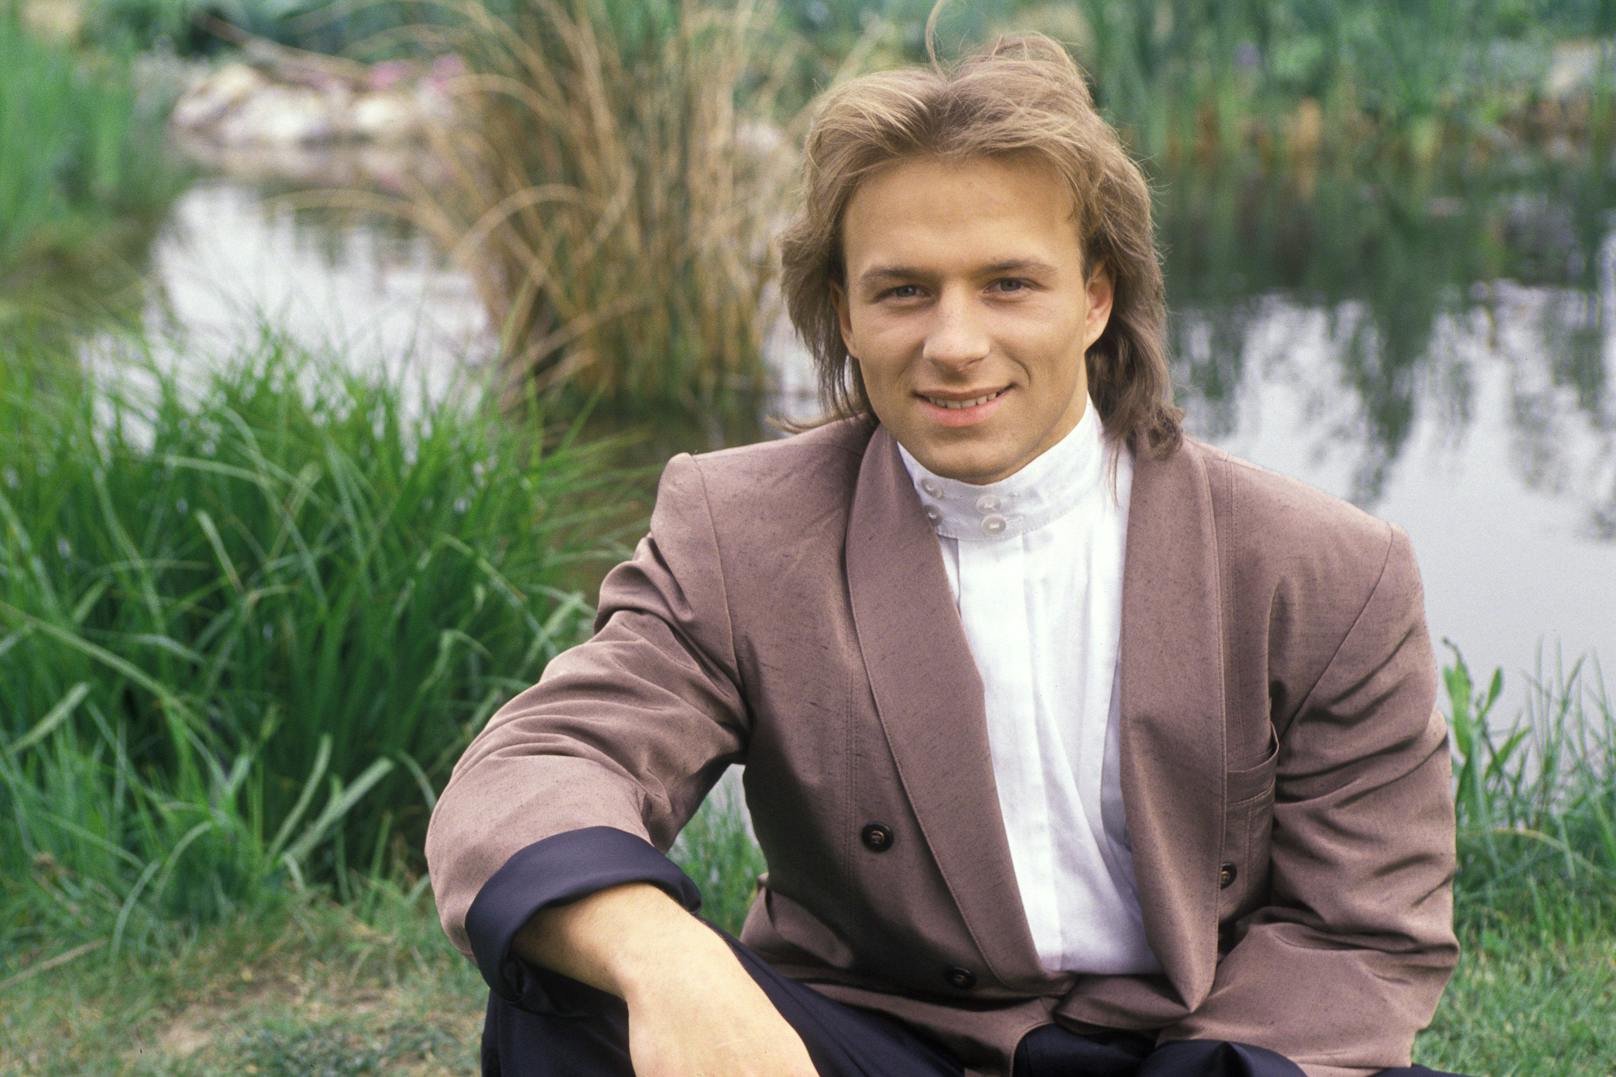 Beim 34. Concours Eurovision de la Chanson, der 1989 in Lausanne stattfand, vertrat <strong>Thomas Forstner</strong> Österreich mit dem Titel "Nur ein Lied" – geschrieben von Dieter Bohlen – und belegte damit den 5. von 22 Plätzen.